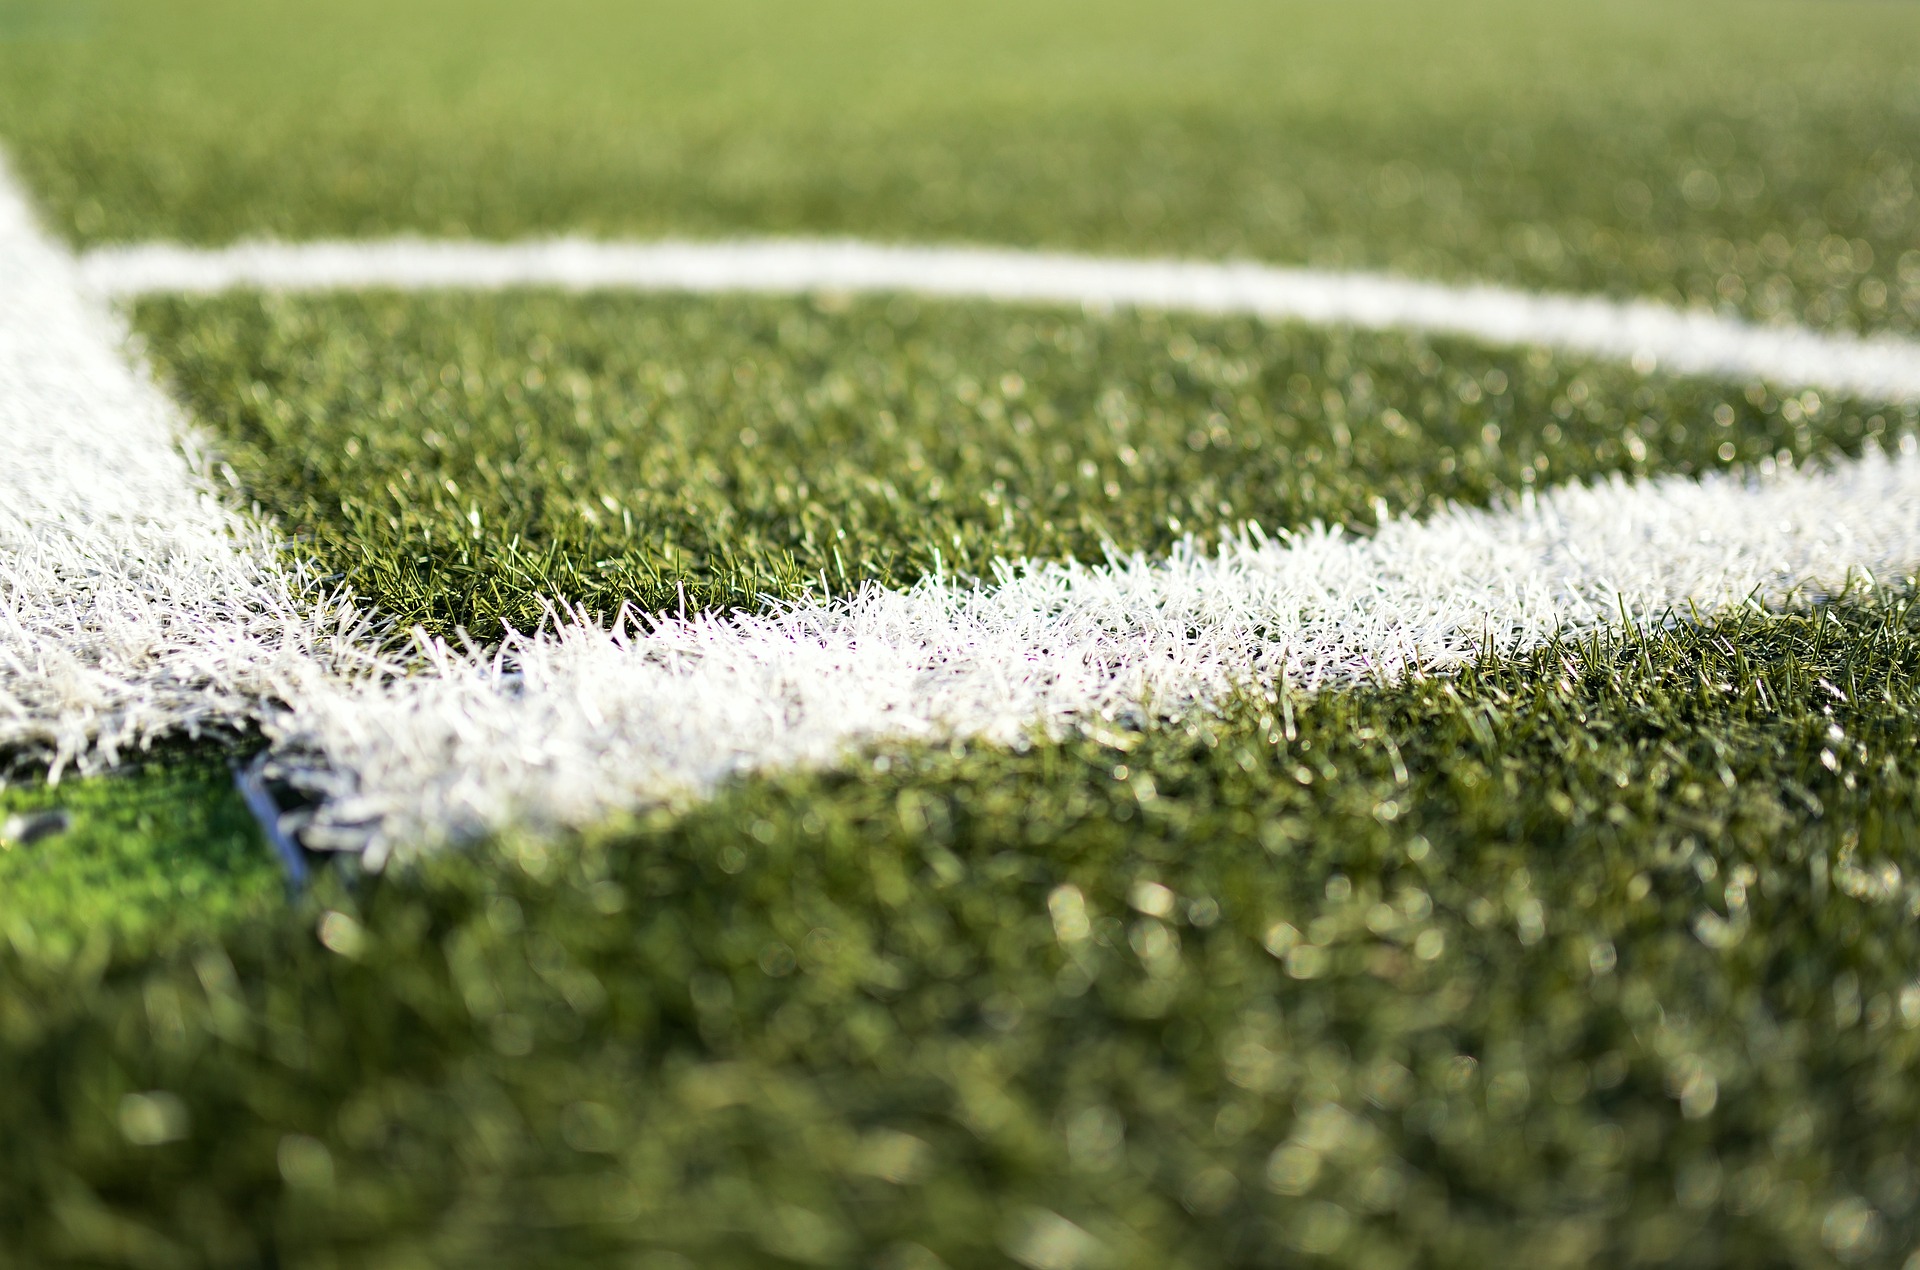 Νεκρός 33χρονος ποδοσφαιριστής στο Κιλκίς – Κατέρρευσε στο γήπεδο την ώρα του αγώνα